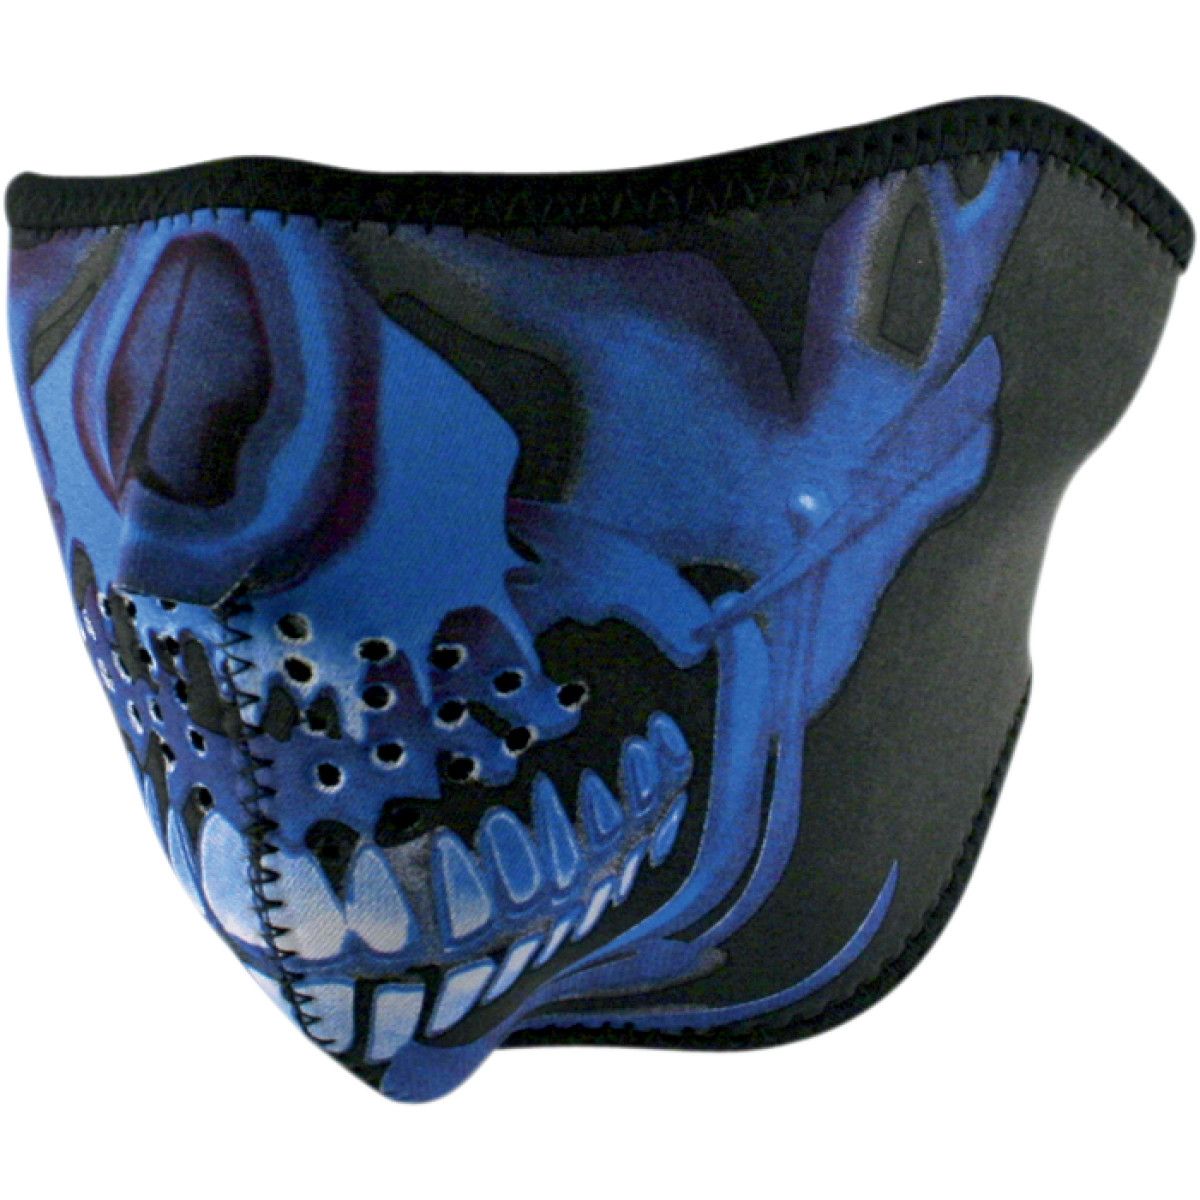 Zan Headgear Neoprene Half Face Mask